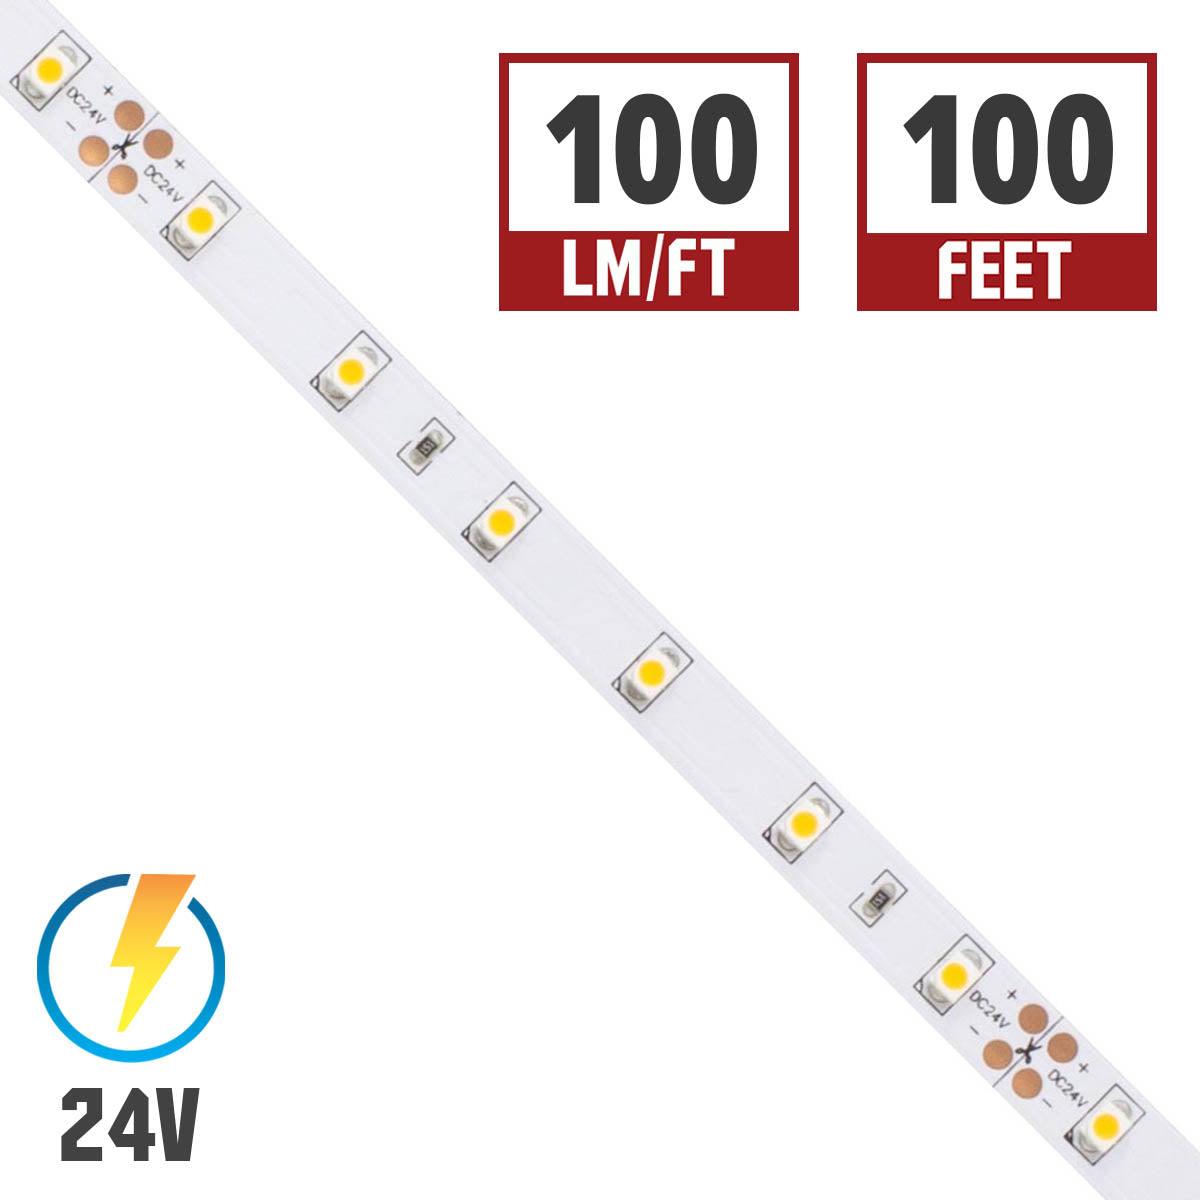 BLAZE LED Strip Light, 100+ Lumens per Ft, 24V - Bees Lighting